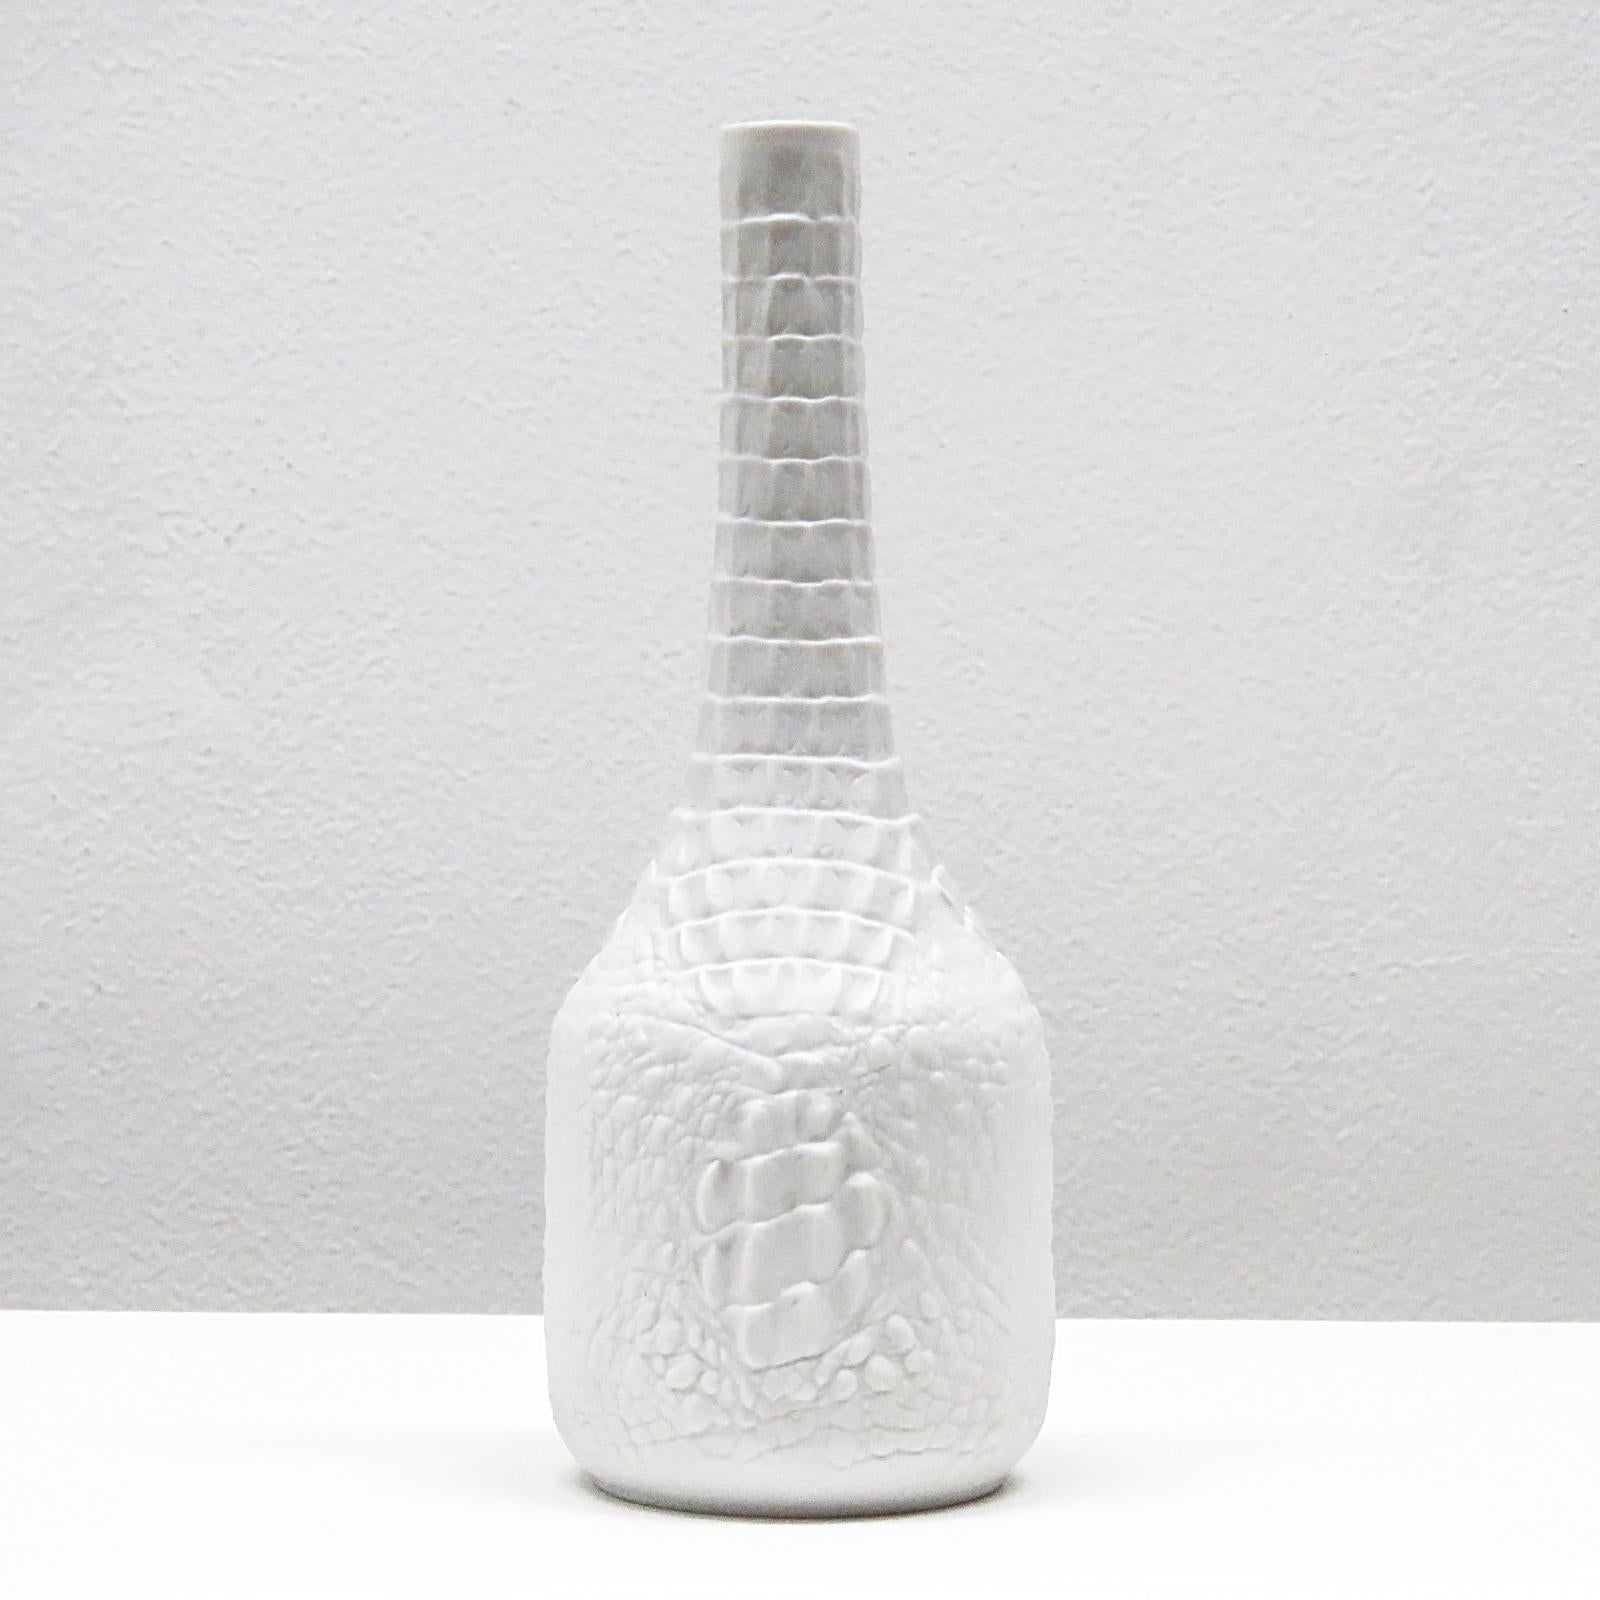 Joli vase en porcelaine biscuitée avec un relief reptilien, modèle n° 248 (version haute).